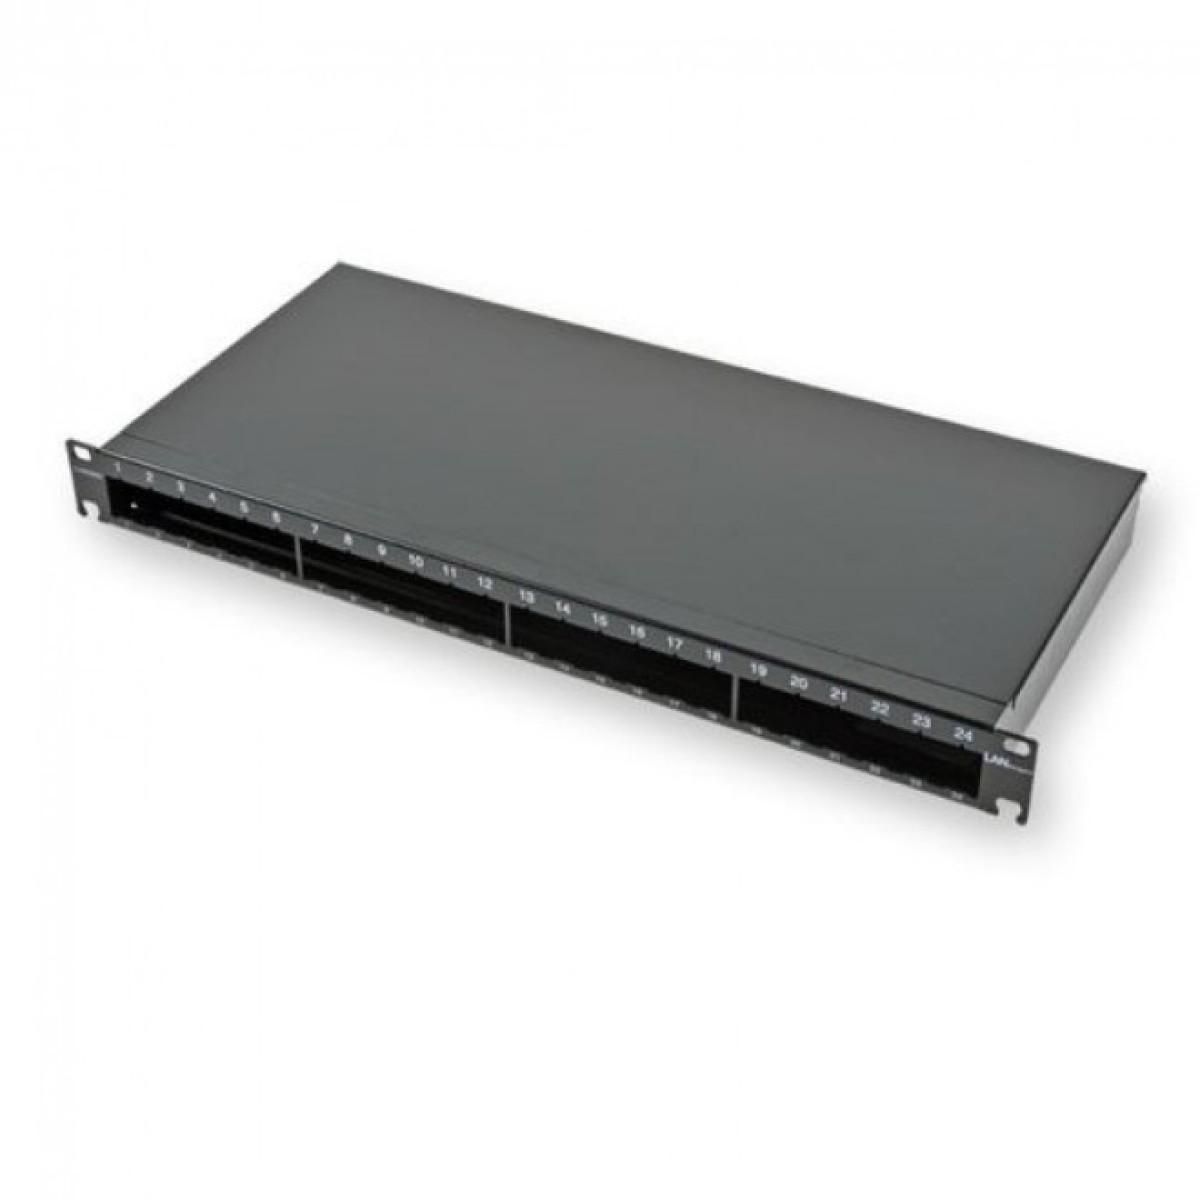 Не выдвижная патч-панель LANC под 24 модуля, 1U, 19",на 4 стандартных сплайс-кассеты,черная 256_256.jpg